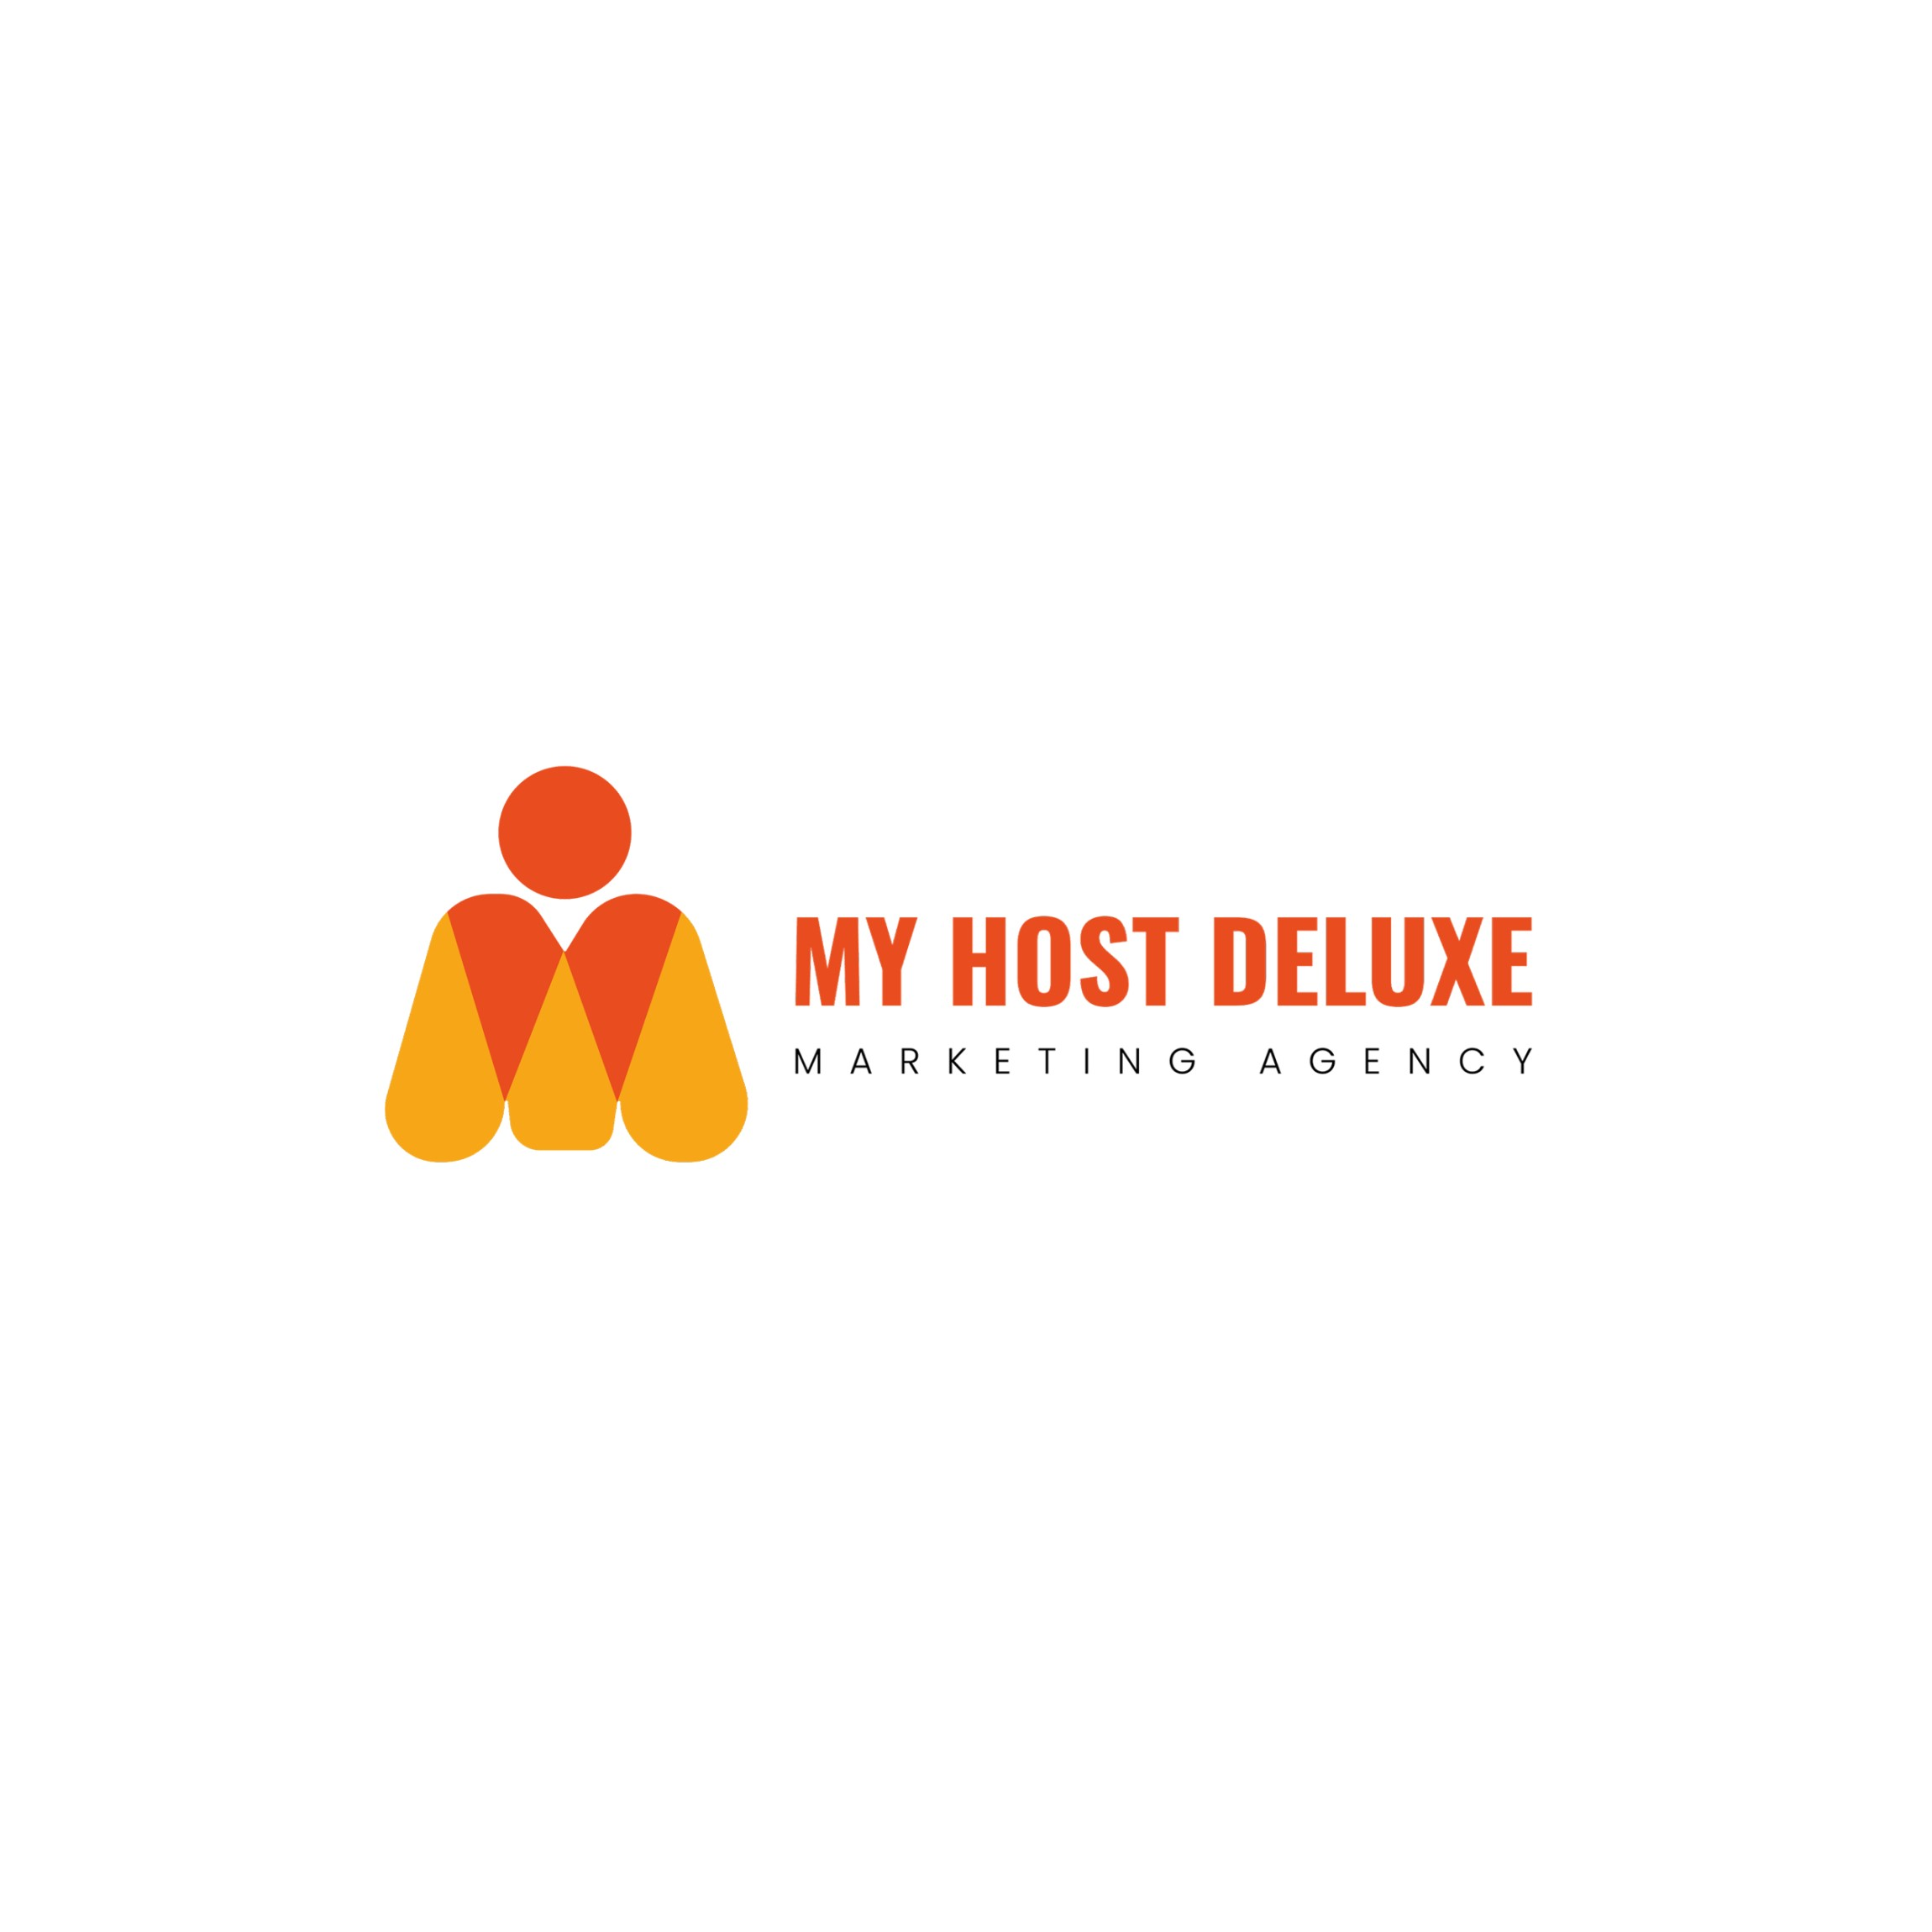 My Host Deluxe